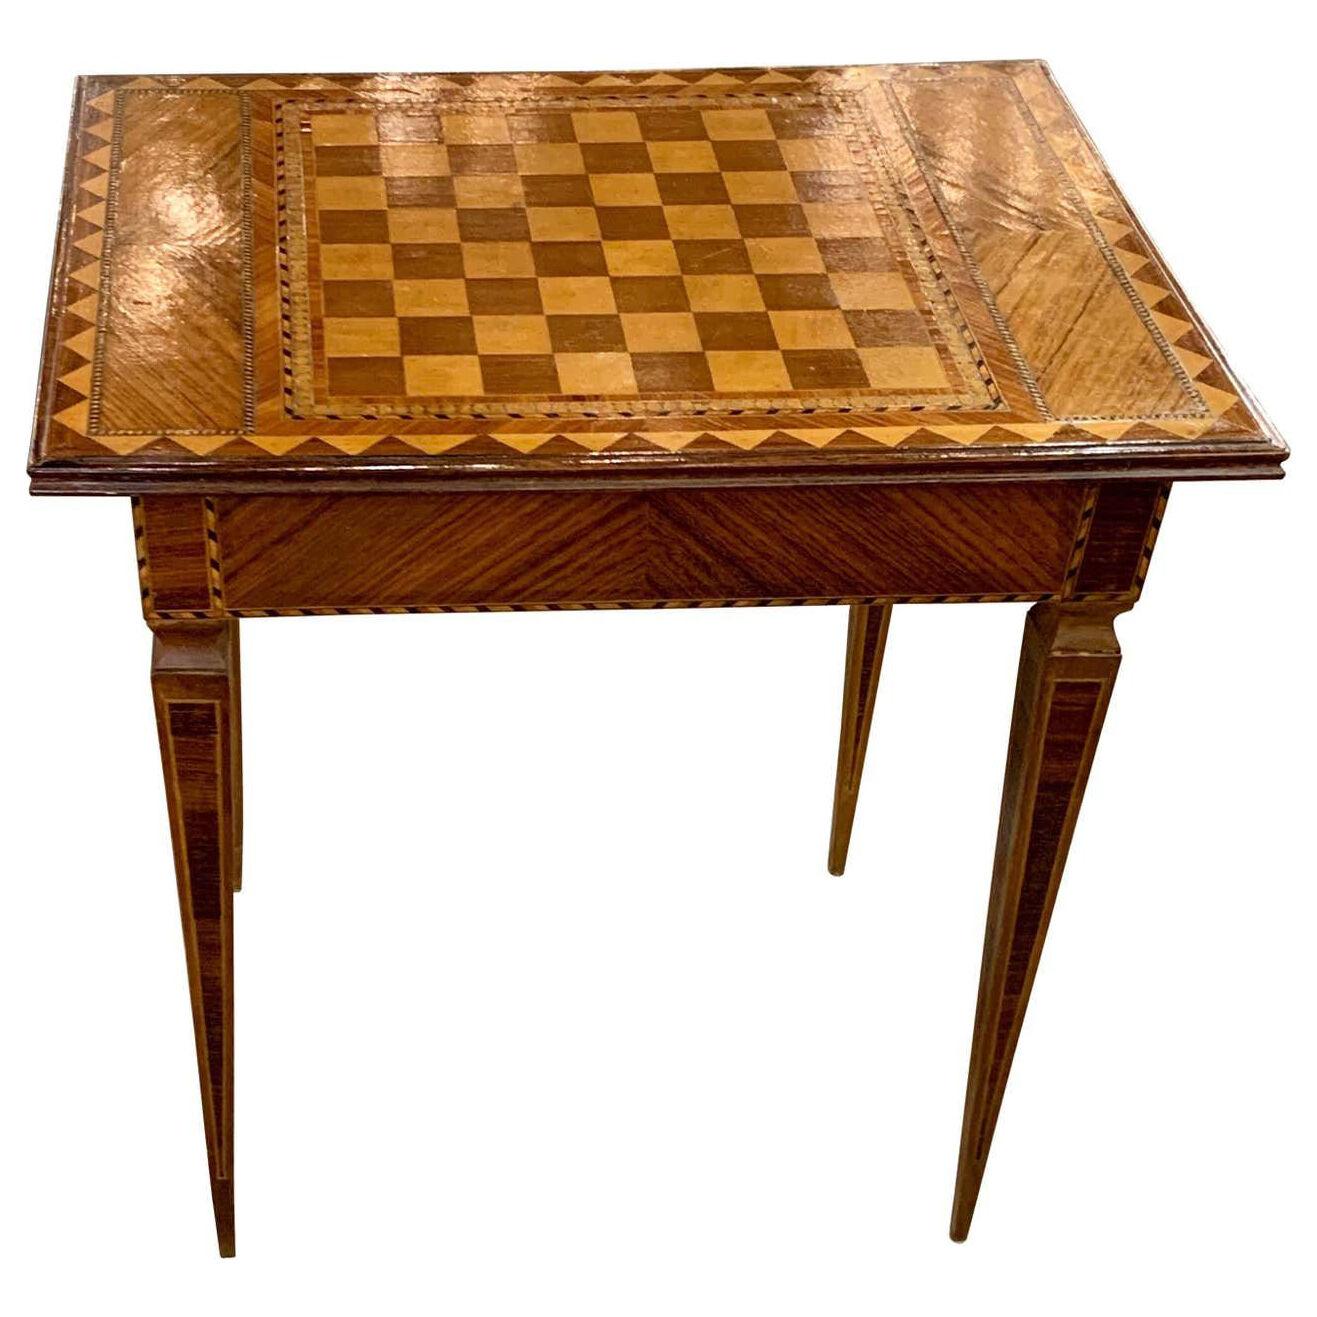 19th Century Italian Kingwood, Maple and Mahogany Checker Board Side Table